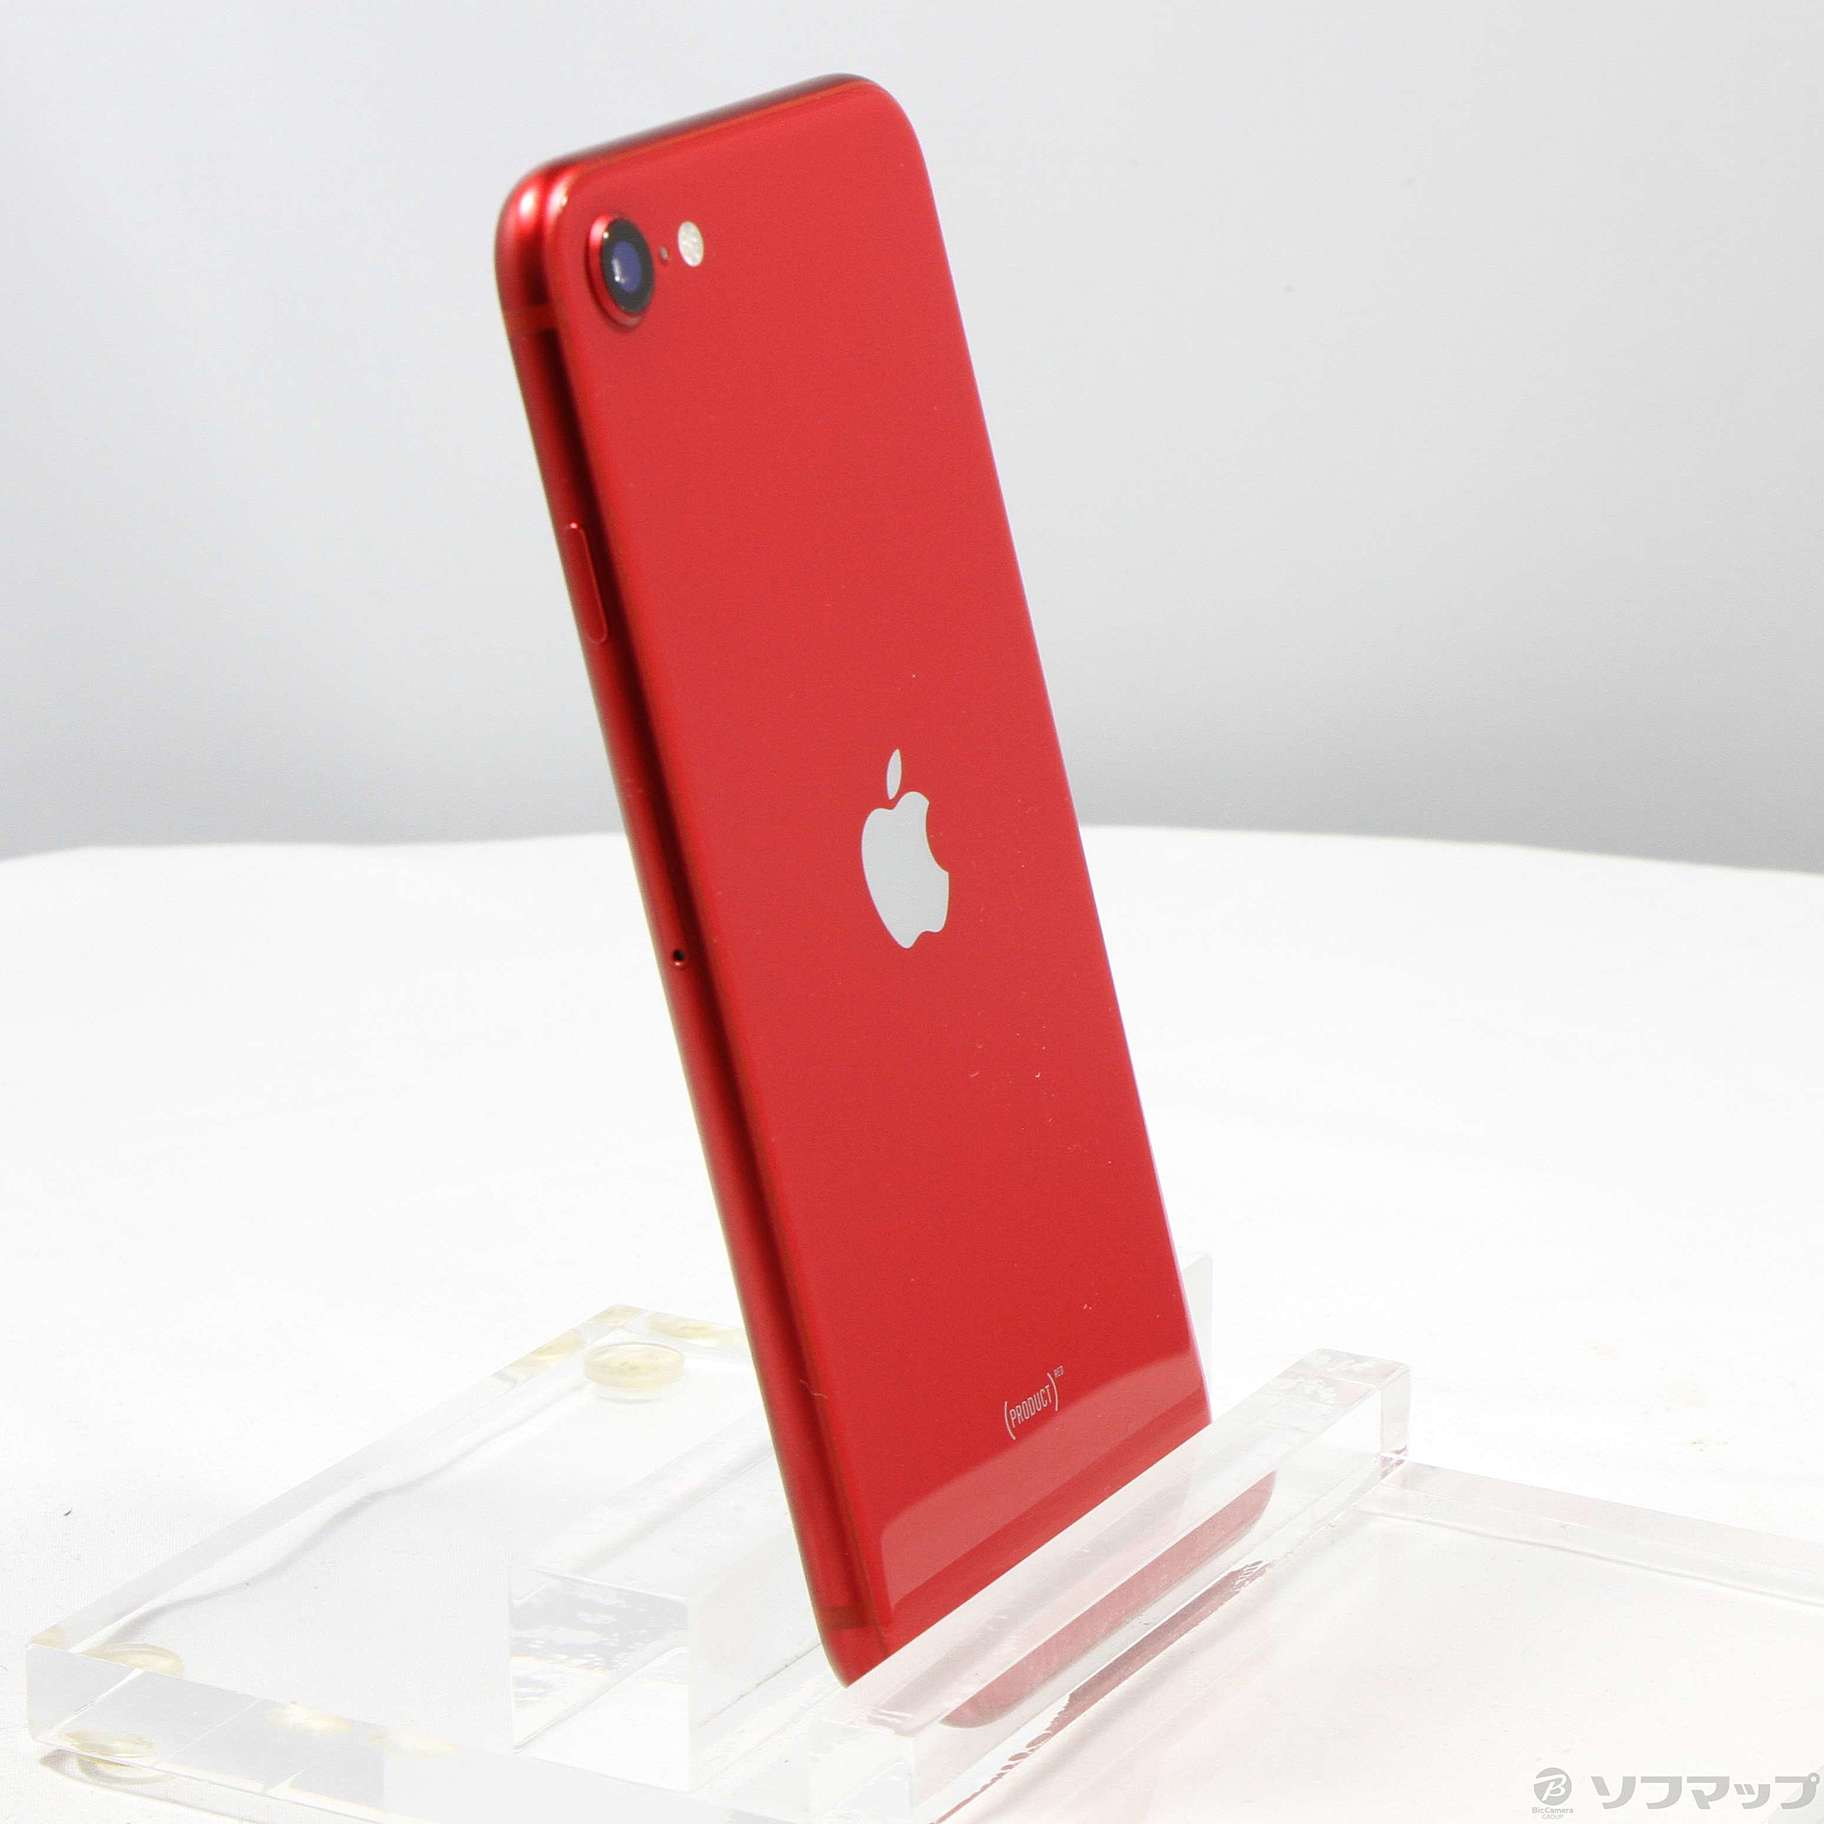 Apple iPhone SE 第2世代64GB レッド2021年10月SIMロック